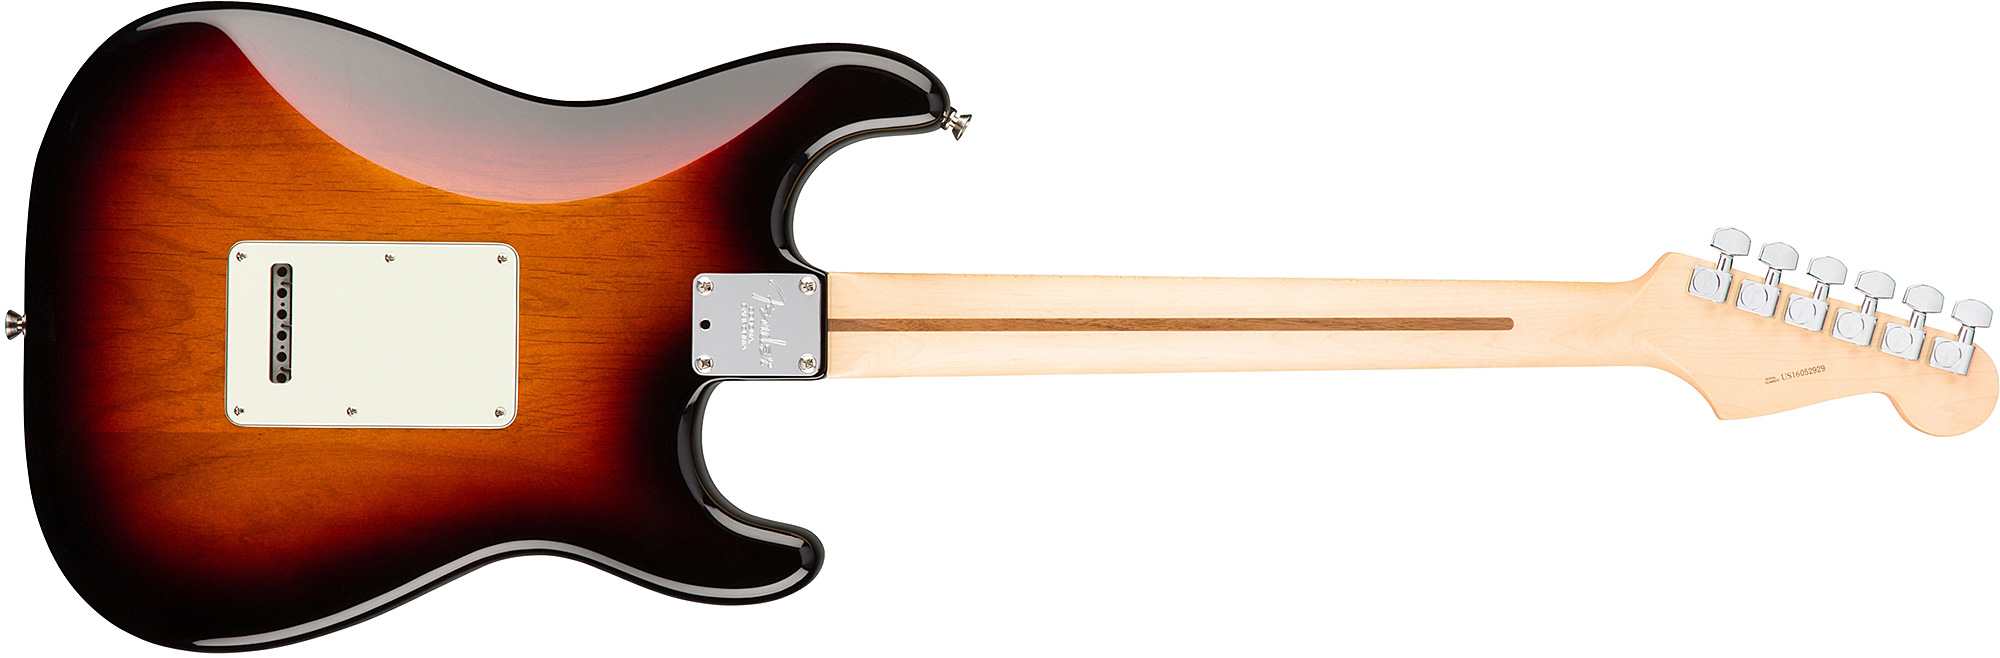 Fender Strat American Professional Lh Usa Gaucher 3s Rw - 3-color Sunburst - E-Gitarre für Linkshänder - Variation 1